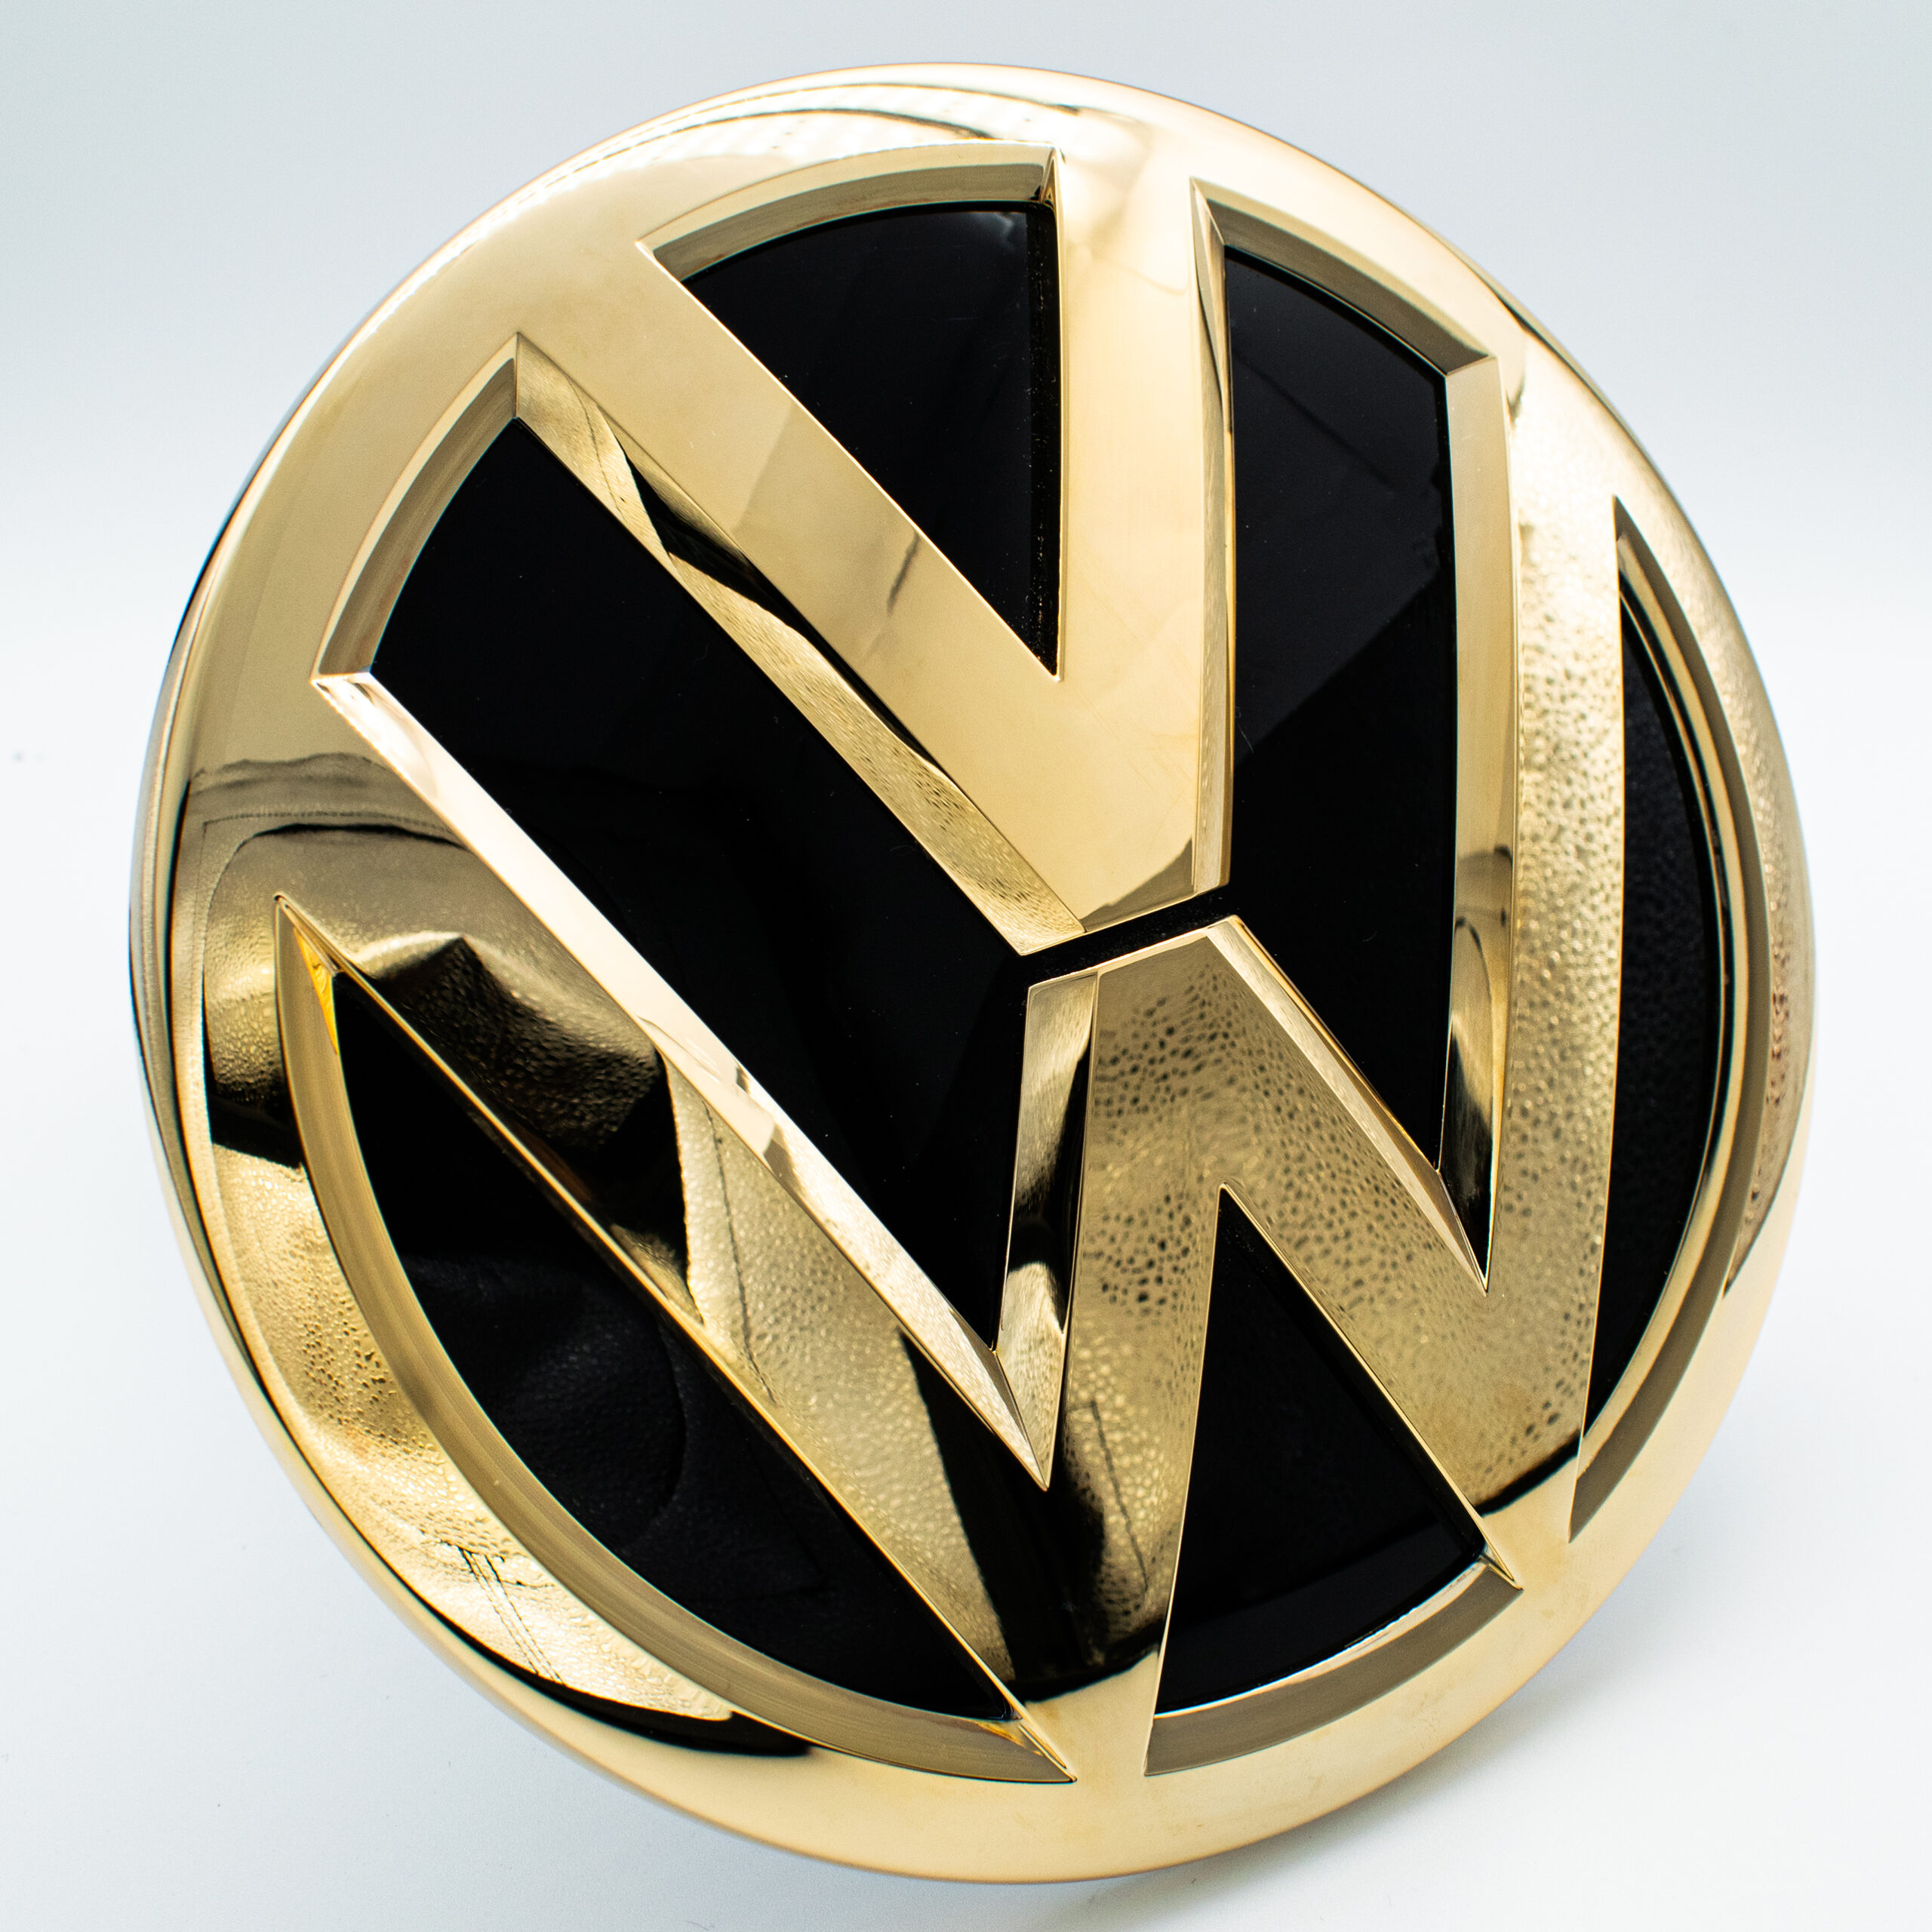 Vergoldete Embleme VW GTI vergolden lassen DARK Galvanik